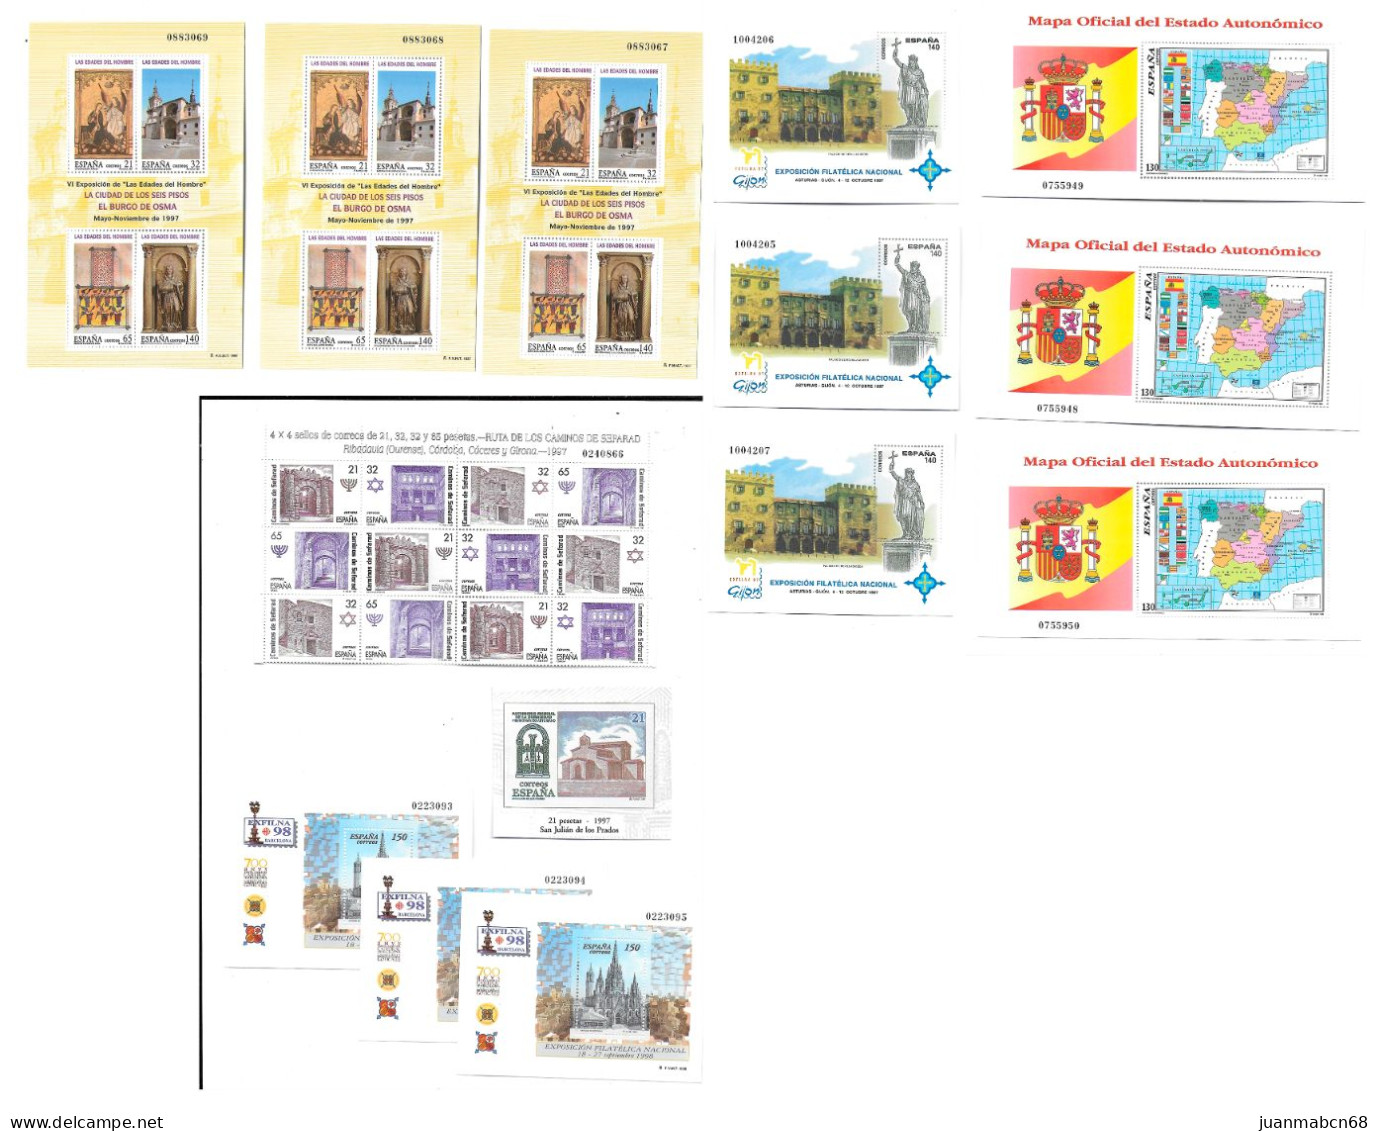 Lote de 1492 sellos nuevos (1990 / 1999)